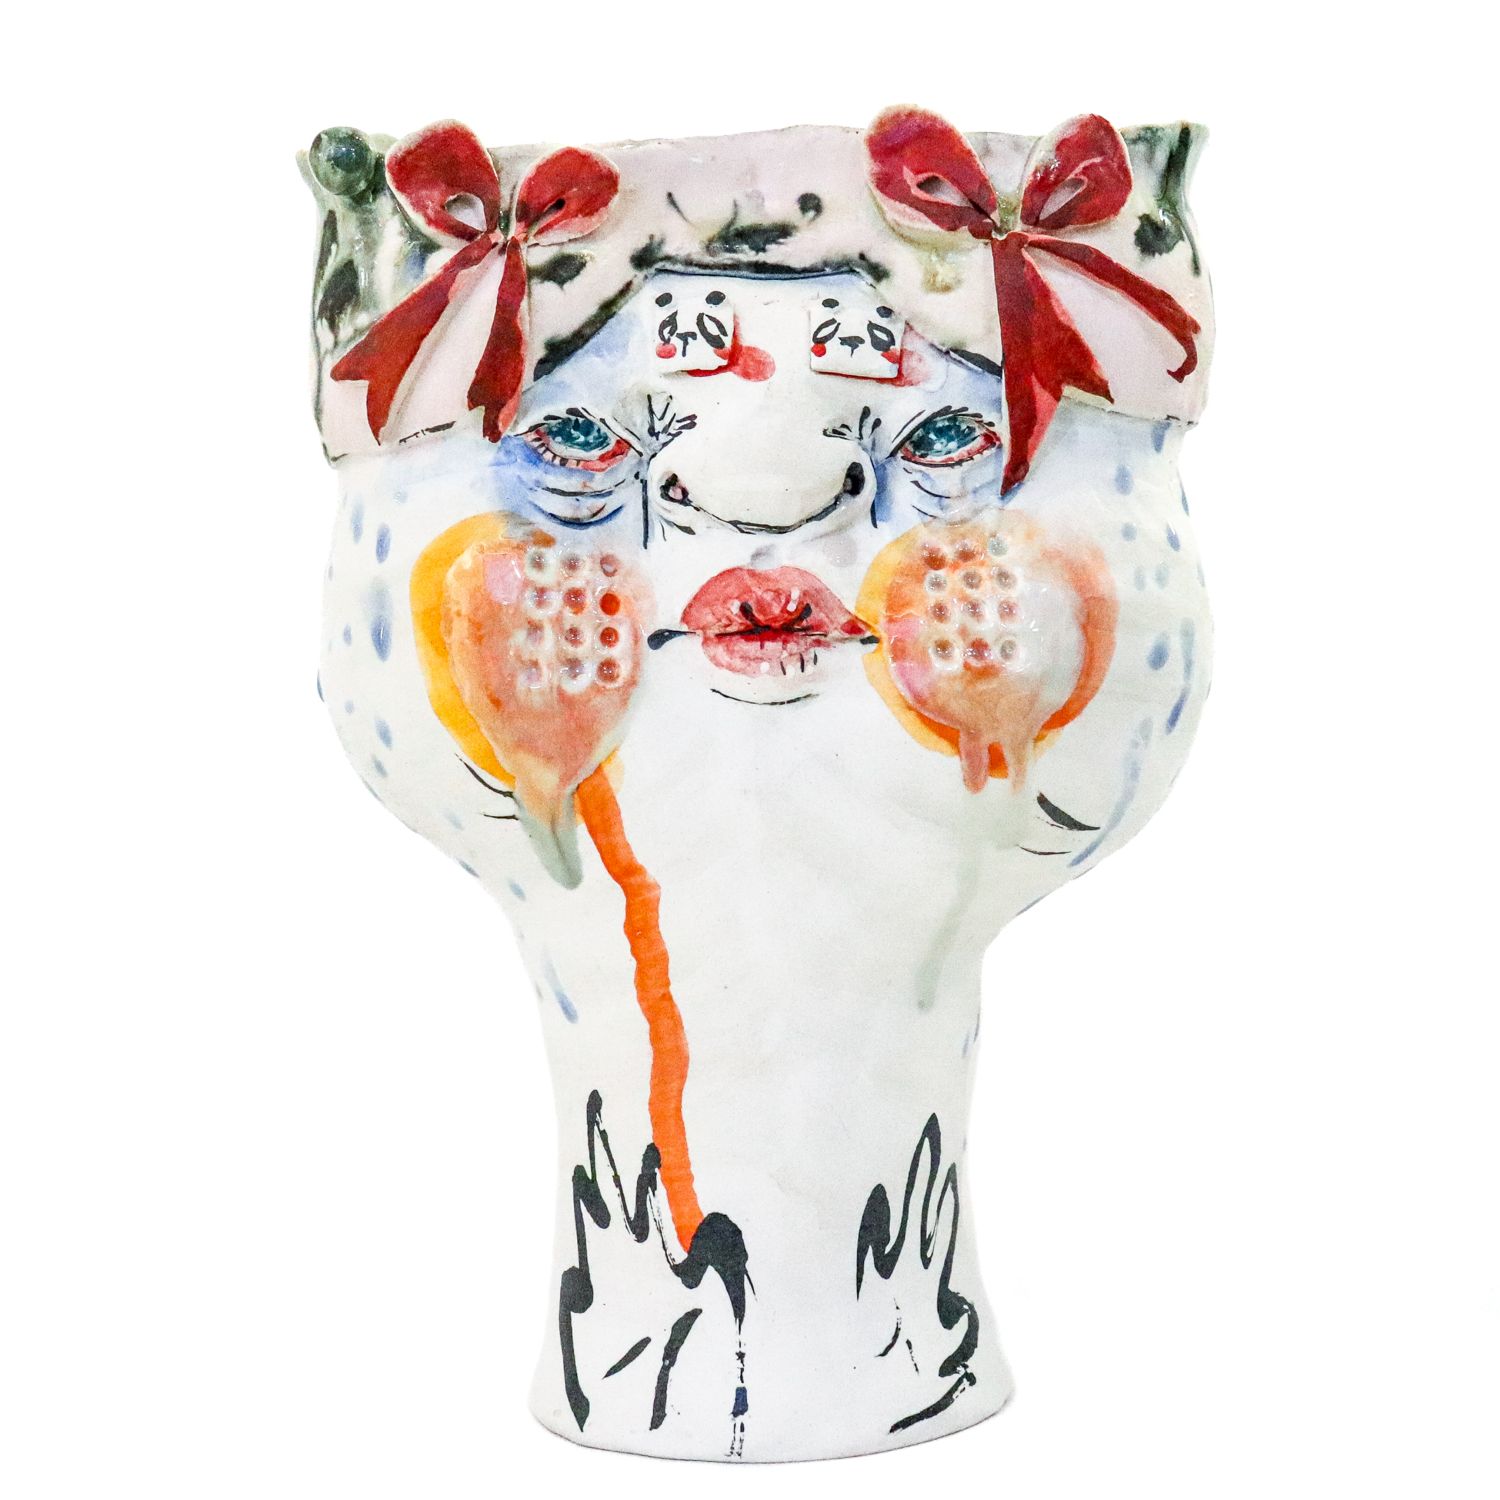 Sami Tsang: Tall Two Faced Vase Product Image 5 of 6